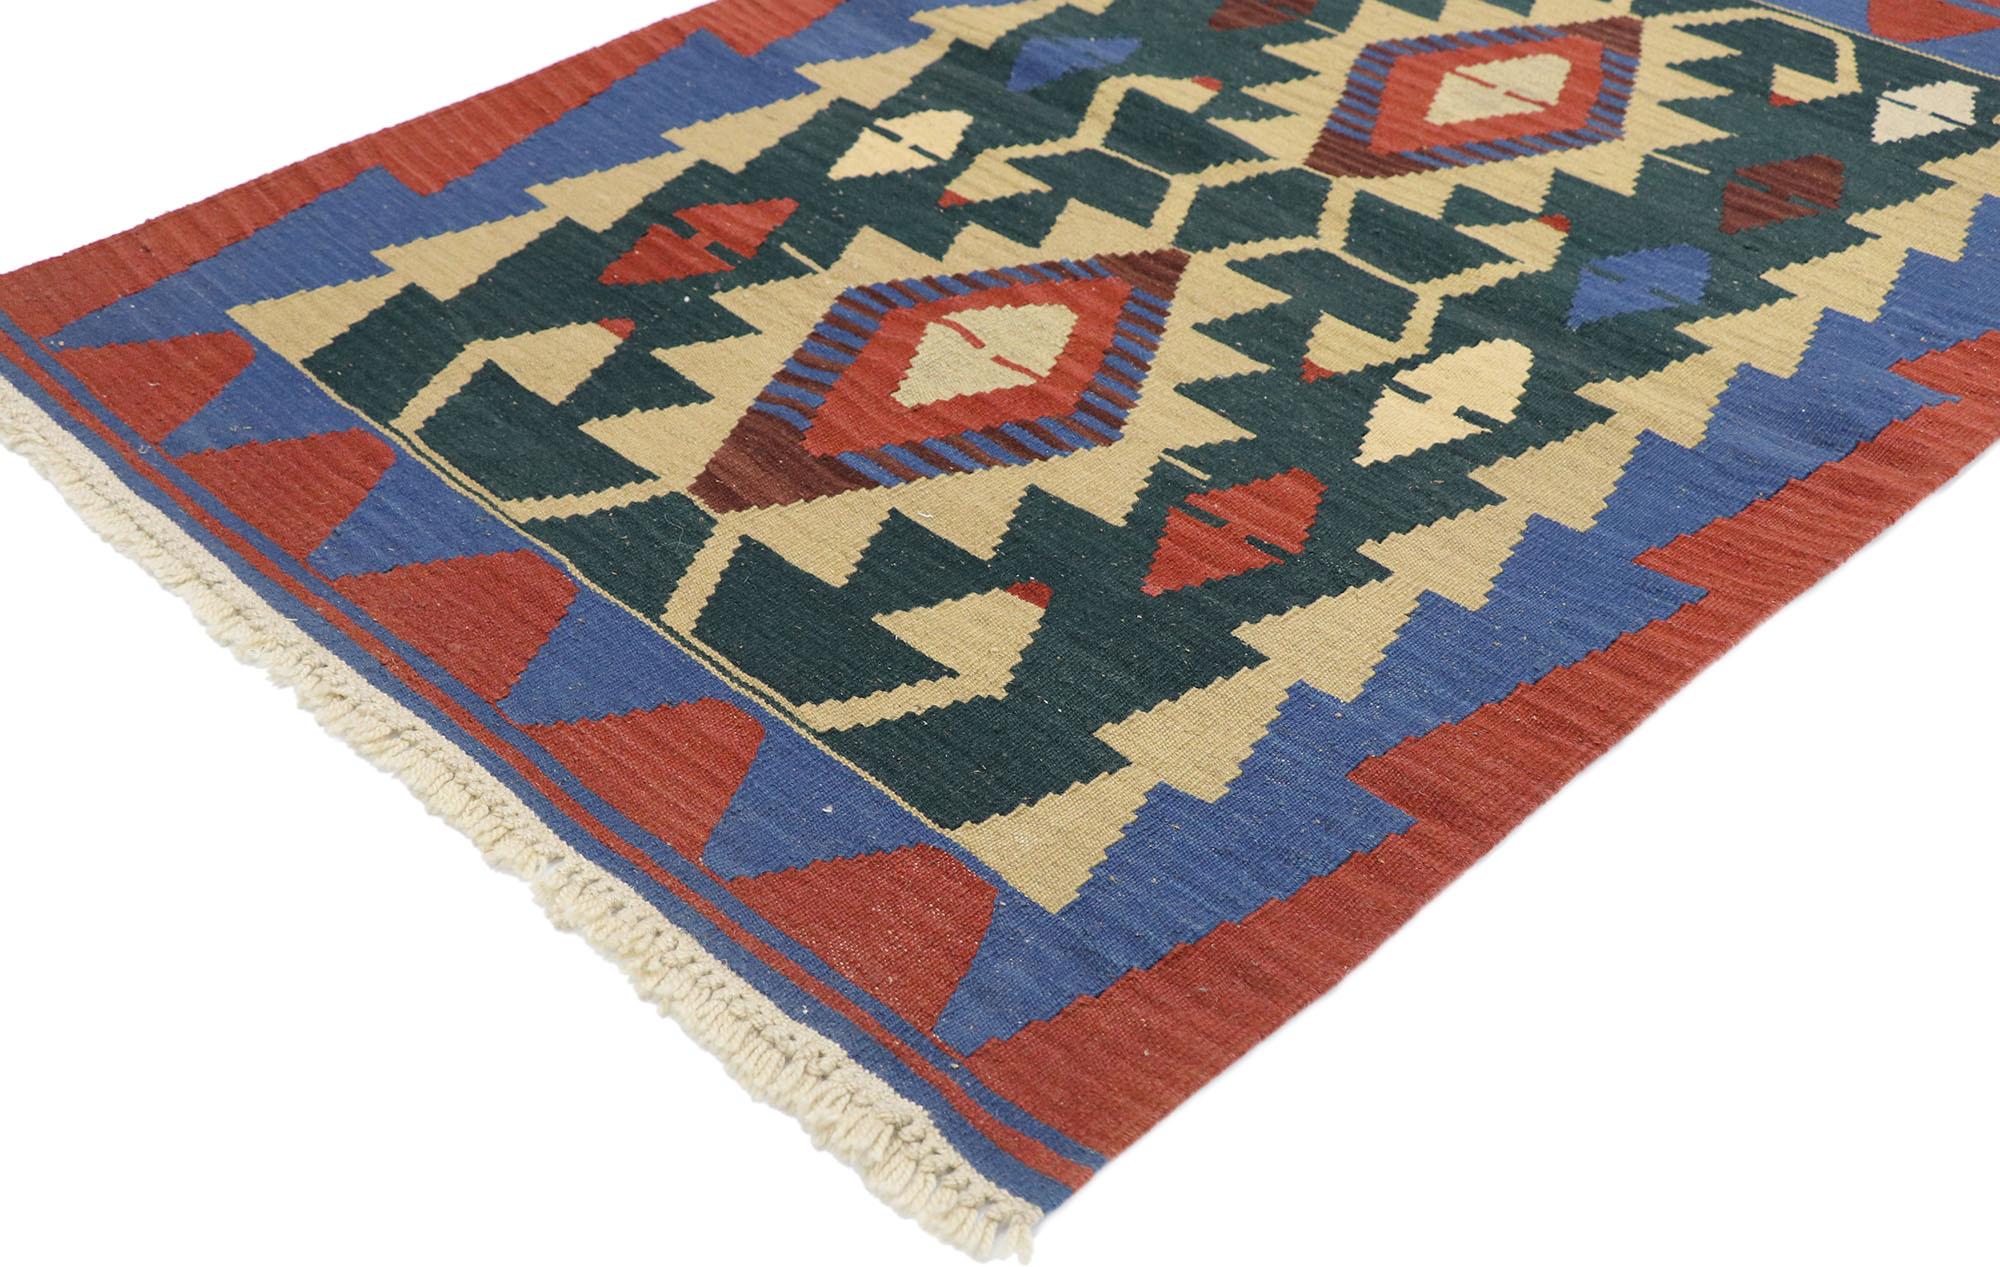 77848, tapis vintage Persan Shiraz Kilim avec style Tribal. Plein de petits détails et un design expressif audacieux combiné avec des couleurs vibrantes et un style tribal, ce tapis kilim persan vintage en laine tissé à la main est une vision